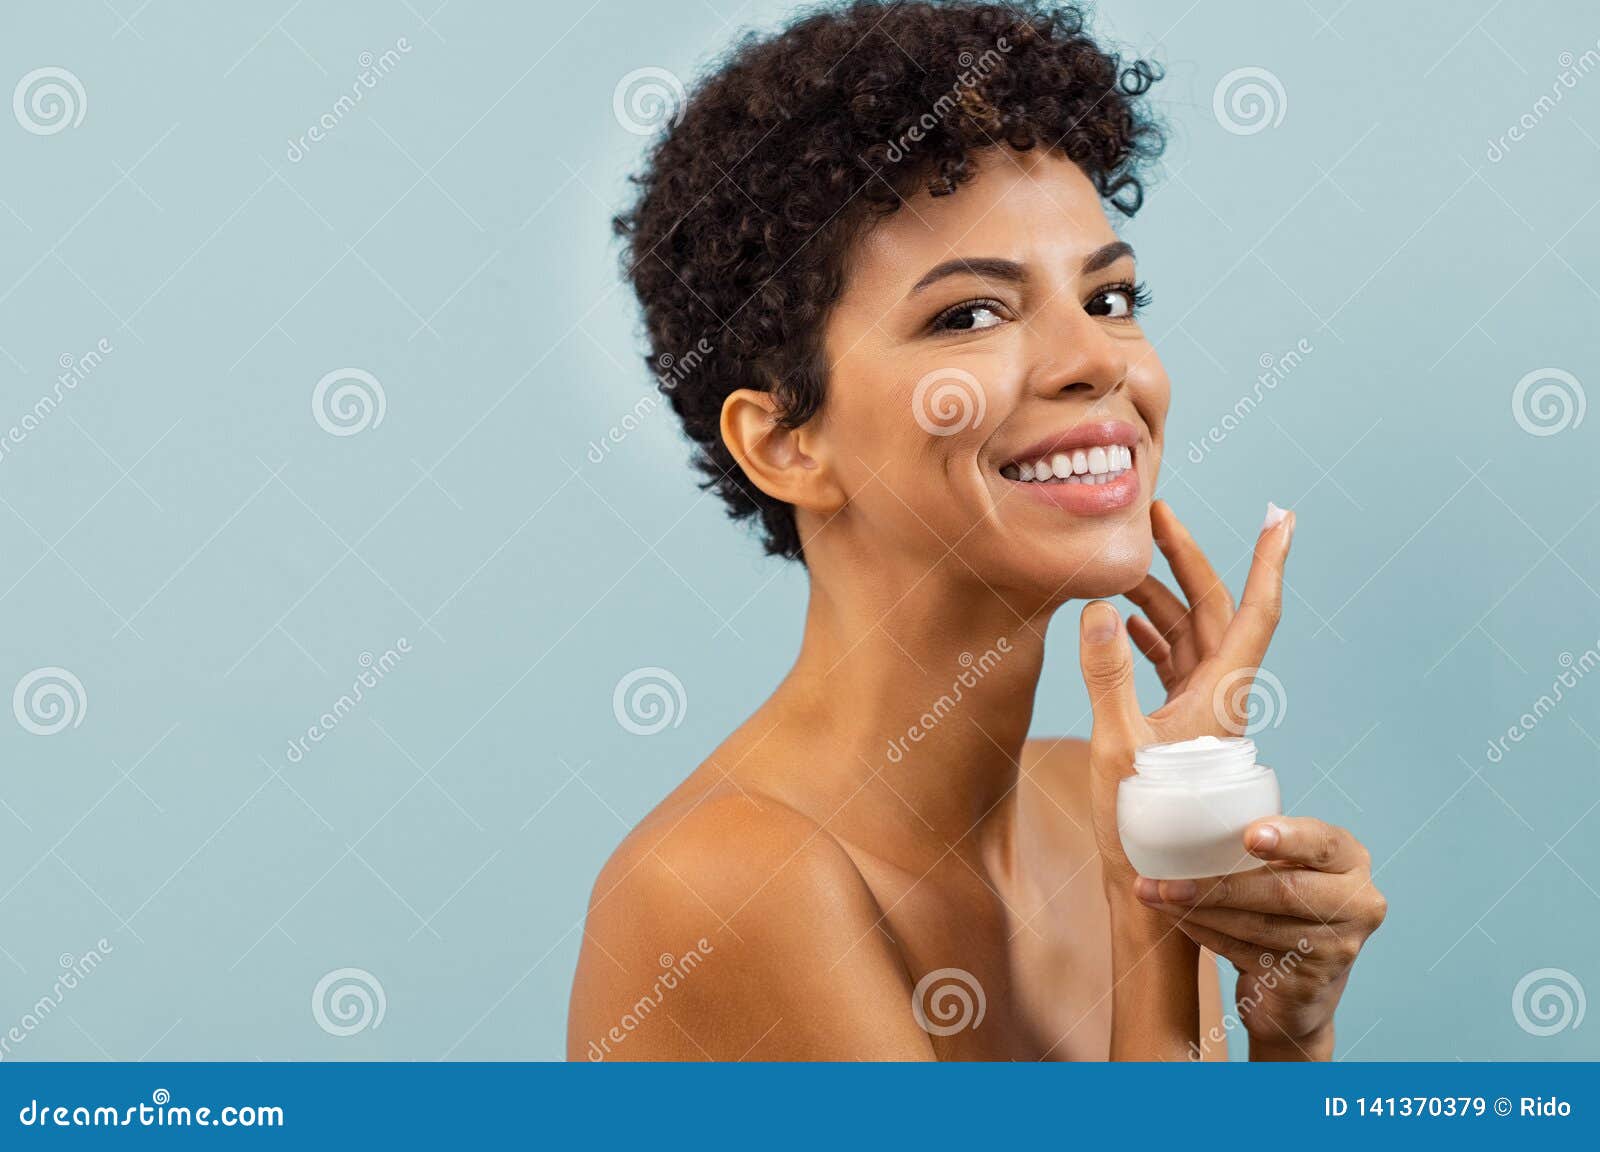 young brazilian woman applying moisturizer